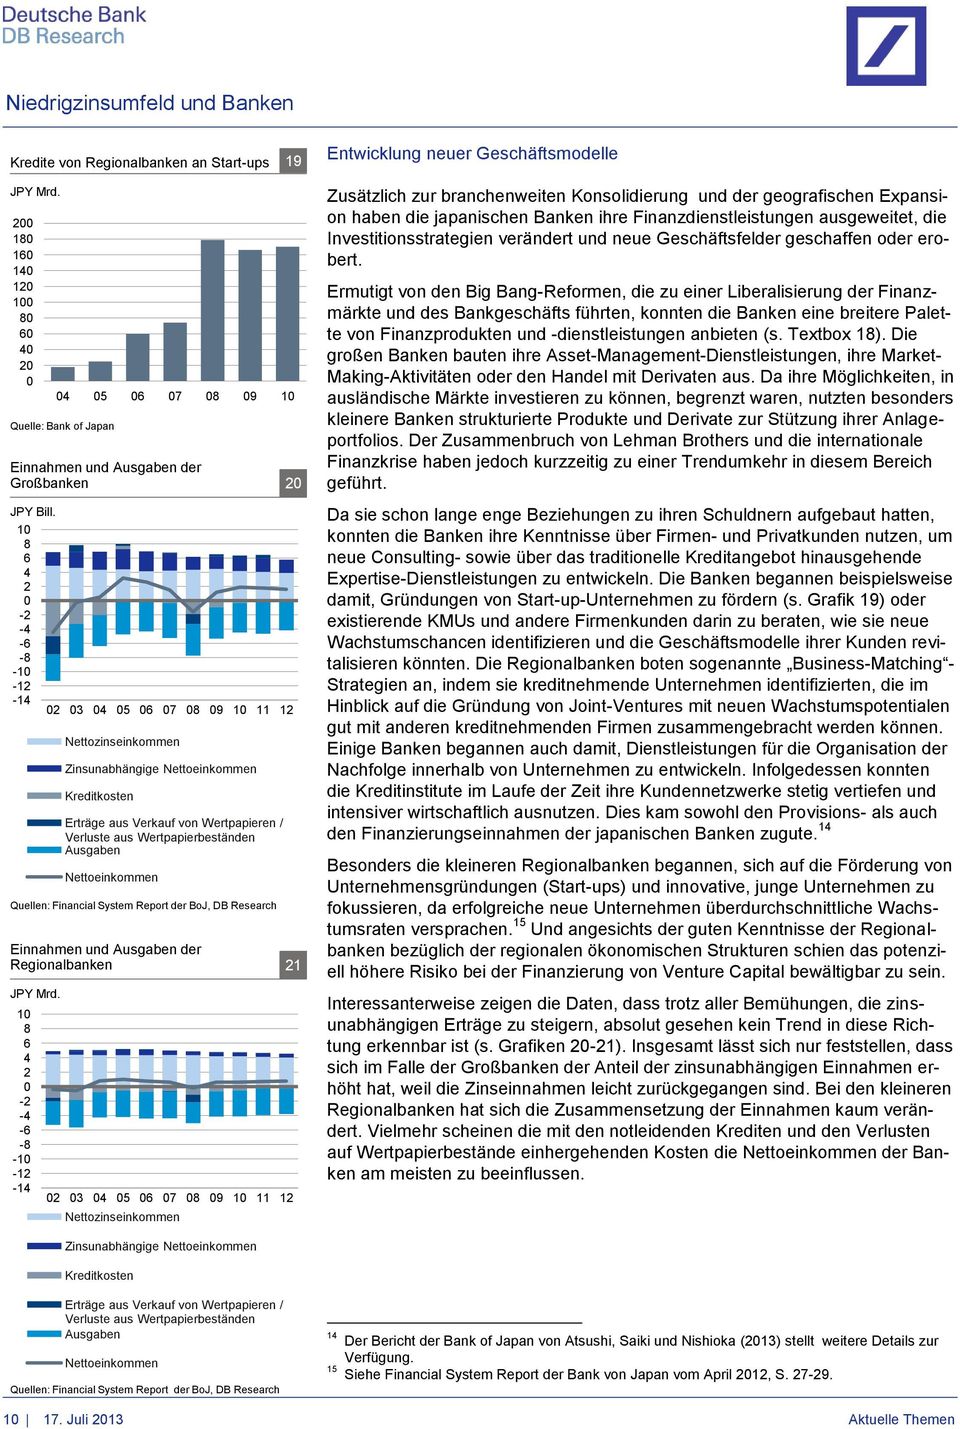 Nettoeinkommen Quellen: Financial System Report der BoJ, DB Research Einnahmen und Ausgaben der Regionalbanken 21 JPY Mrd.